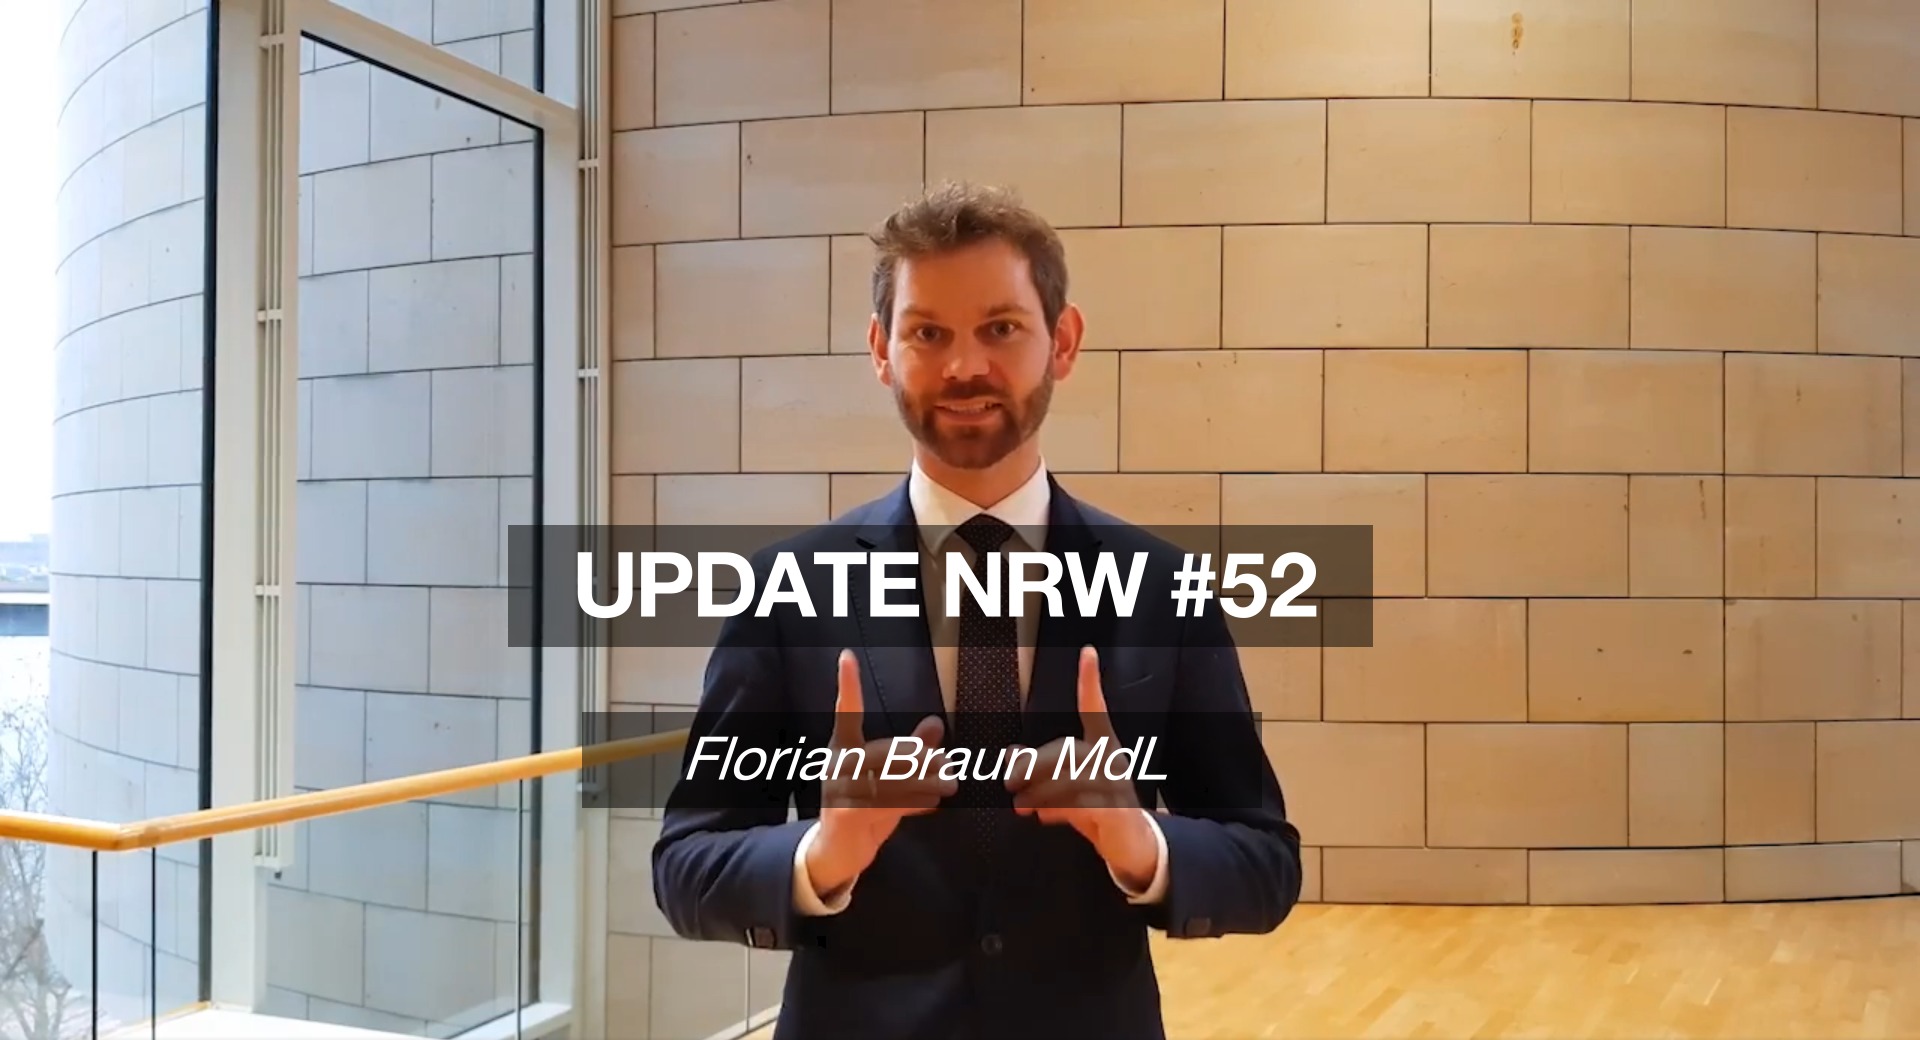 Florian Braun MdL: Update NRW #52